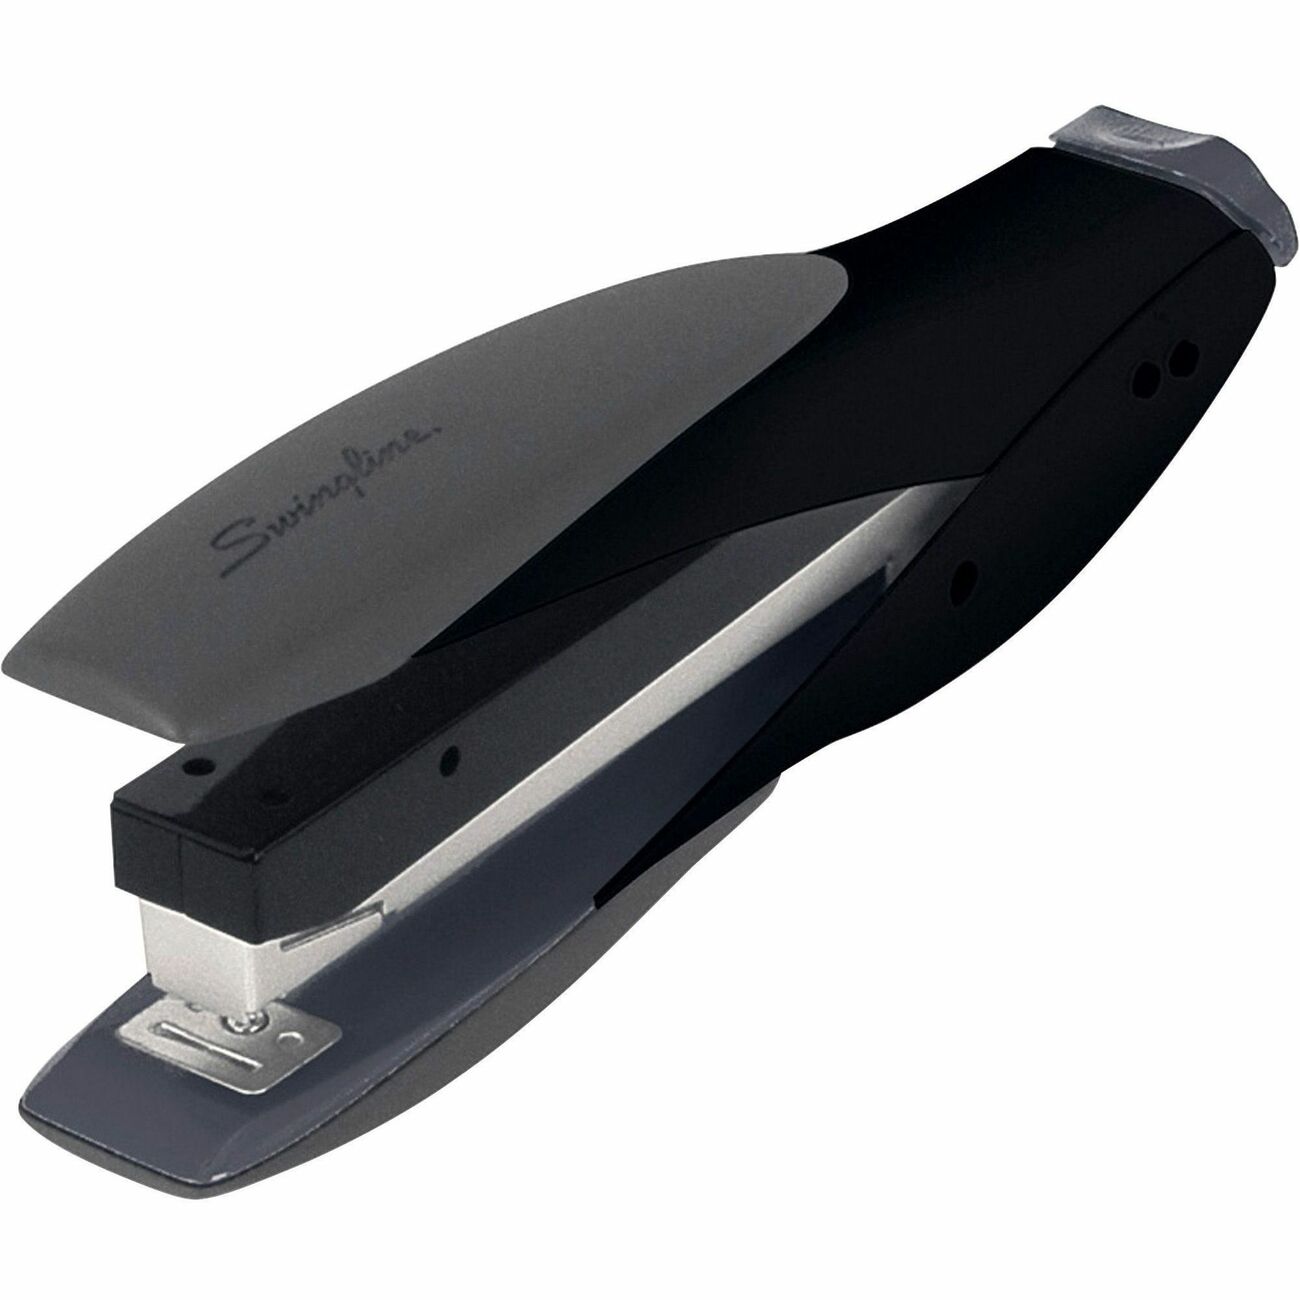 Swingline Optima Full Strip Desk Stapler 25-Sheet Capacity Graphite Black